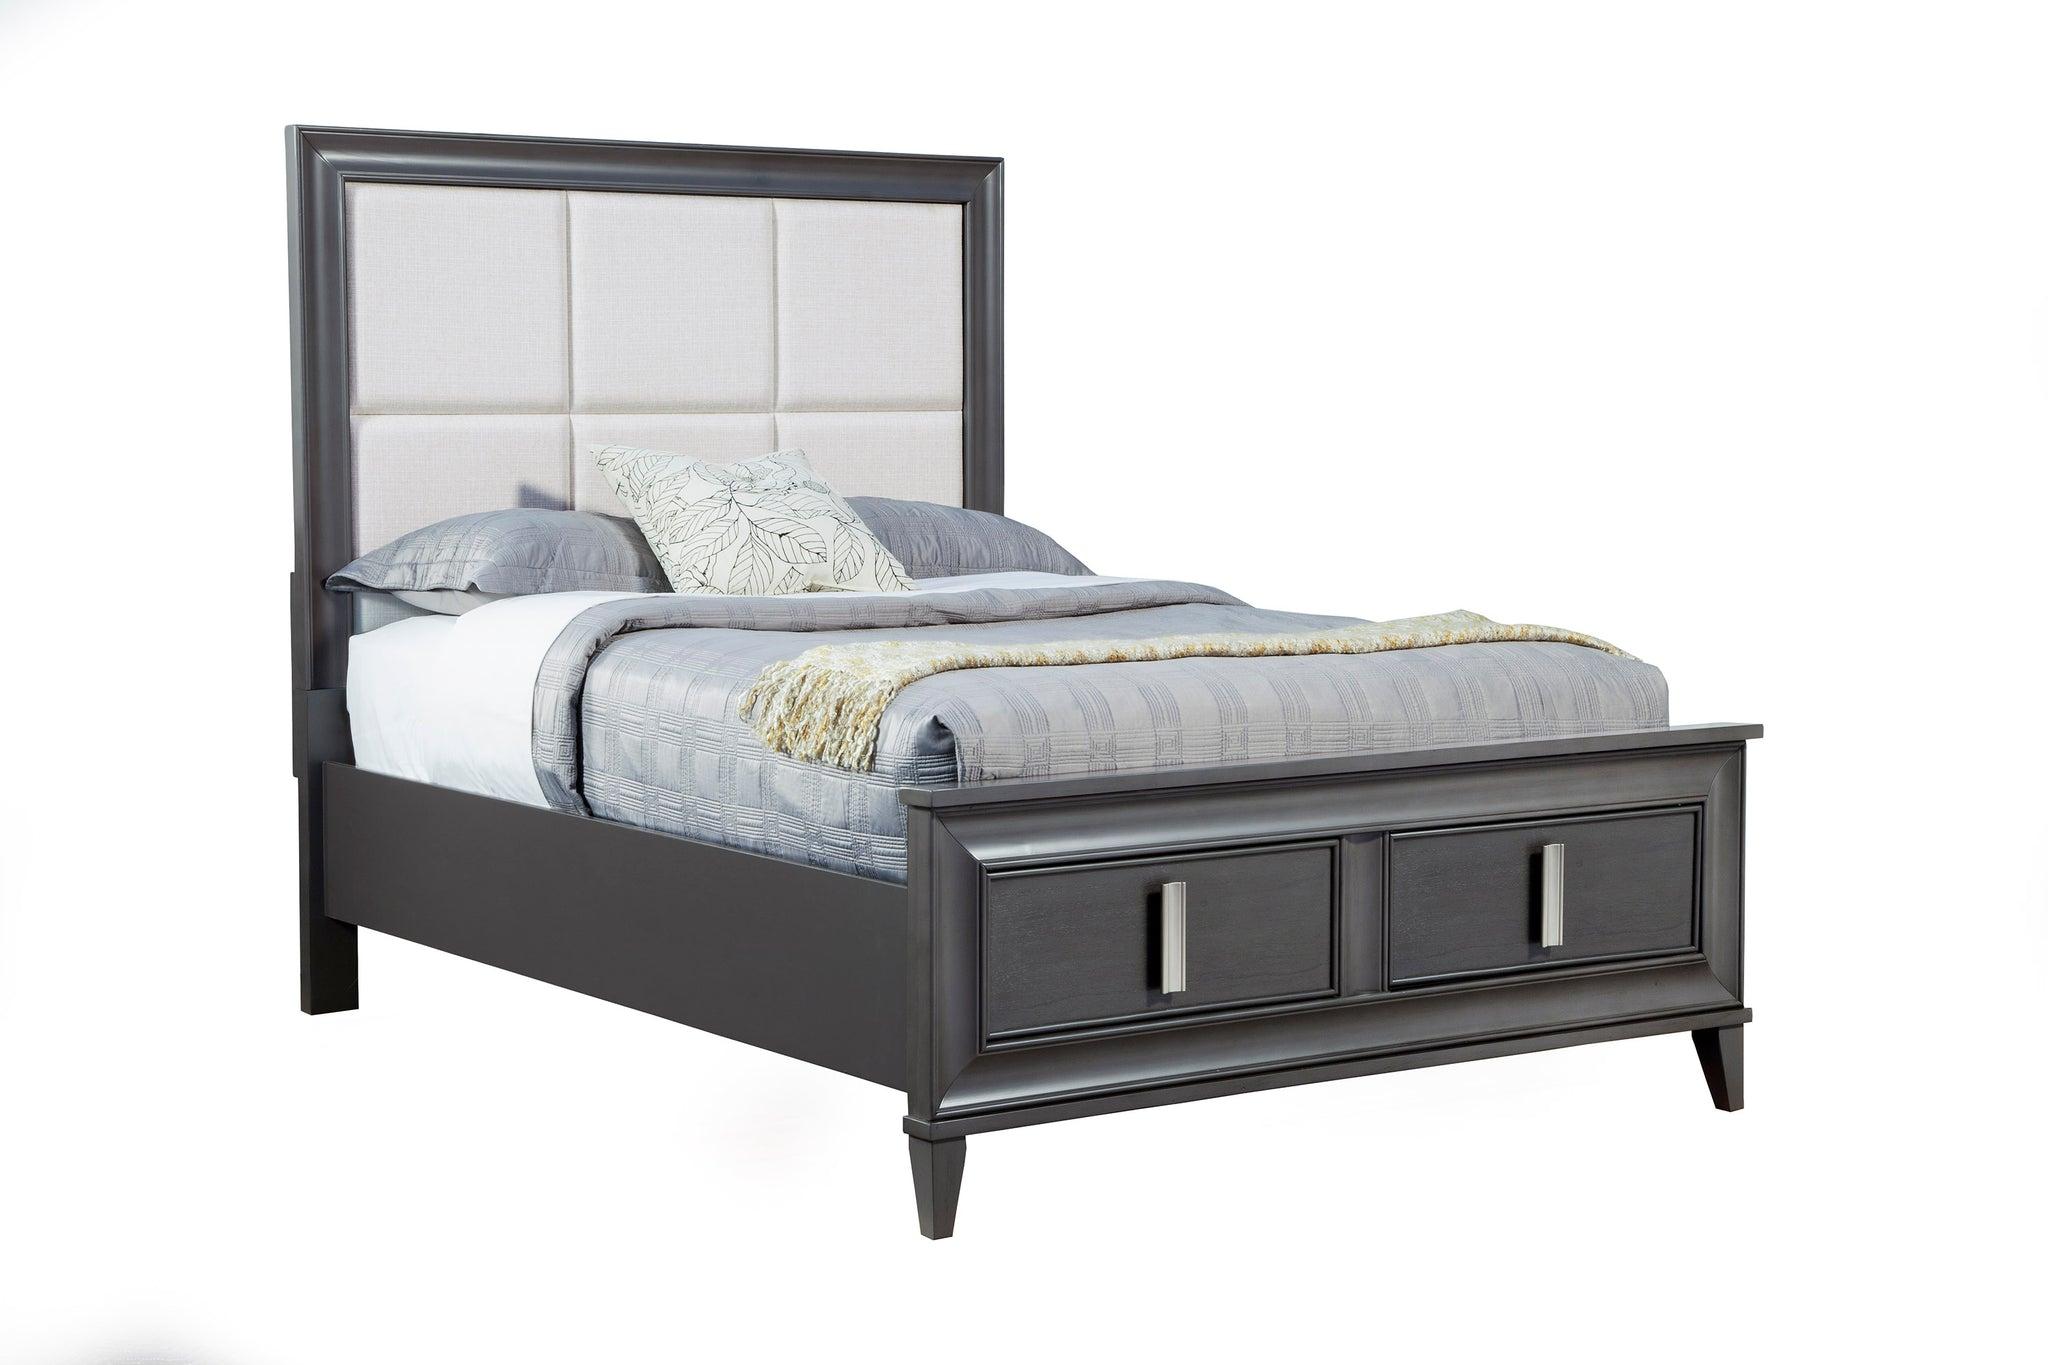 Contemporary, Modern Storage Bed LORRAINE 8171-01Q in Dark Gray, Cream Fabric